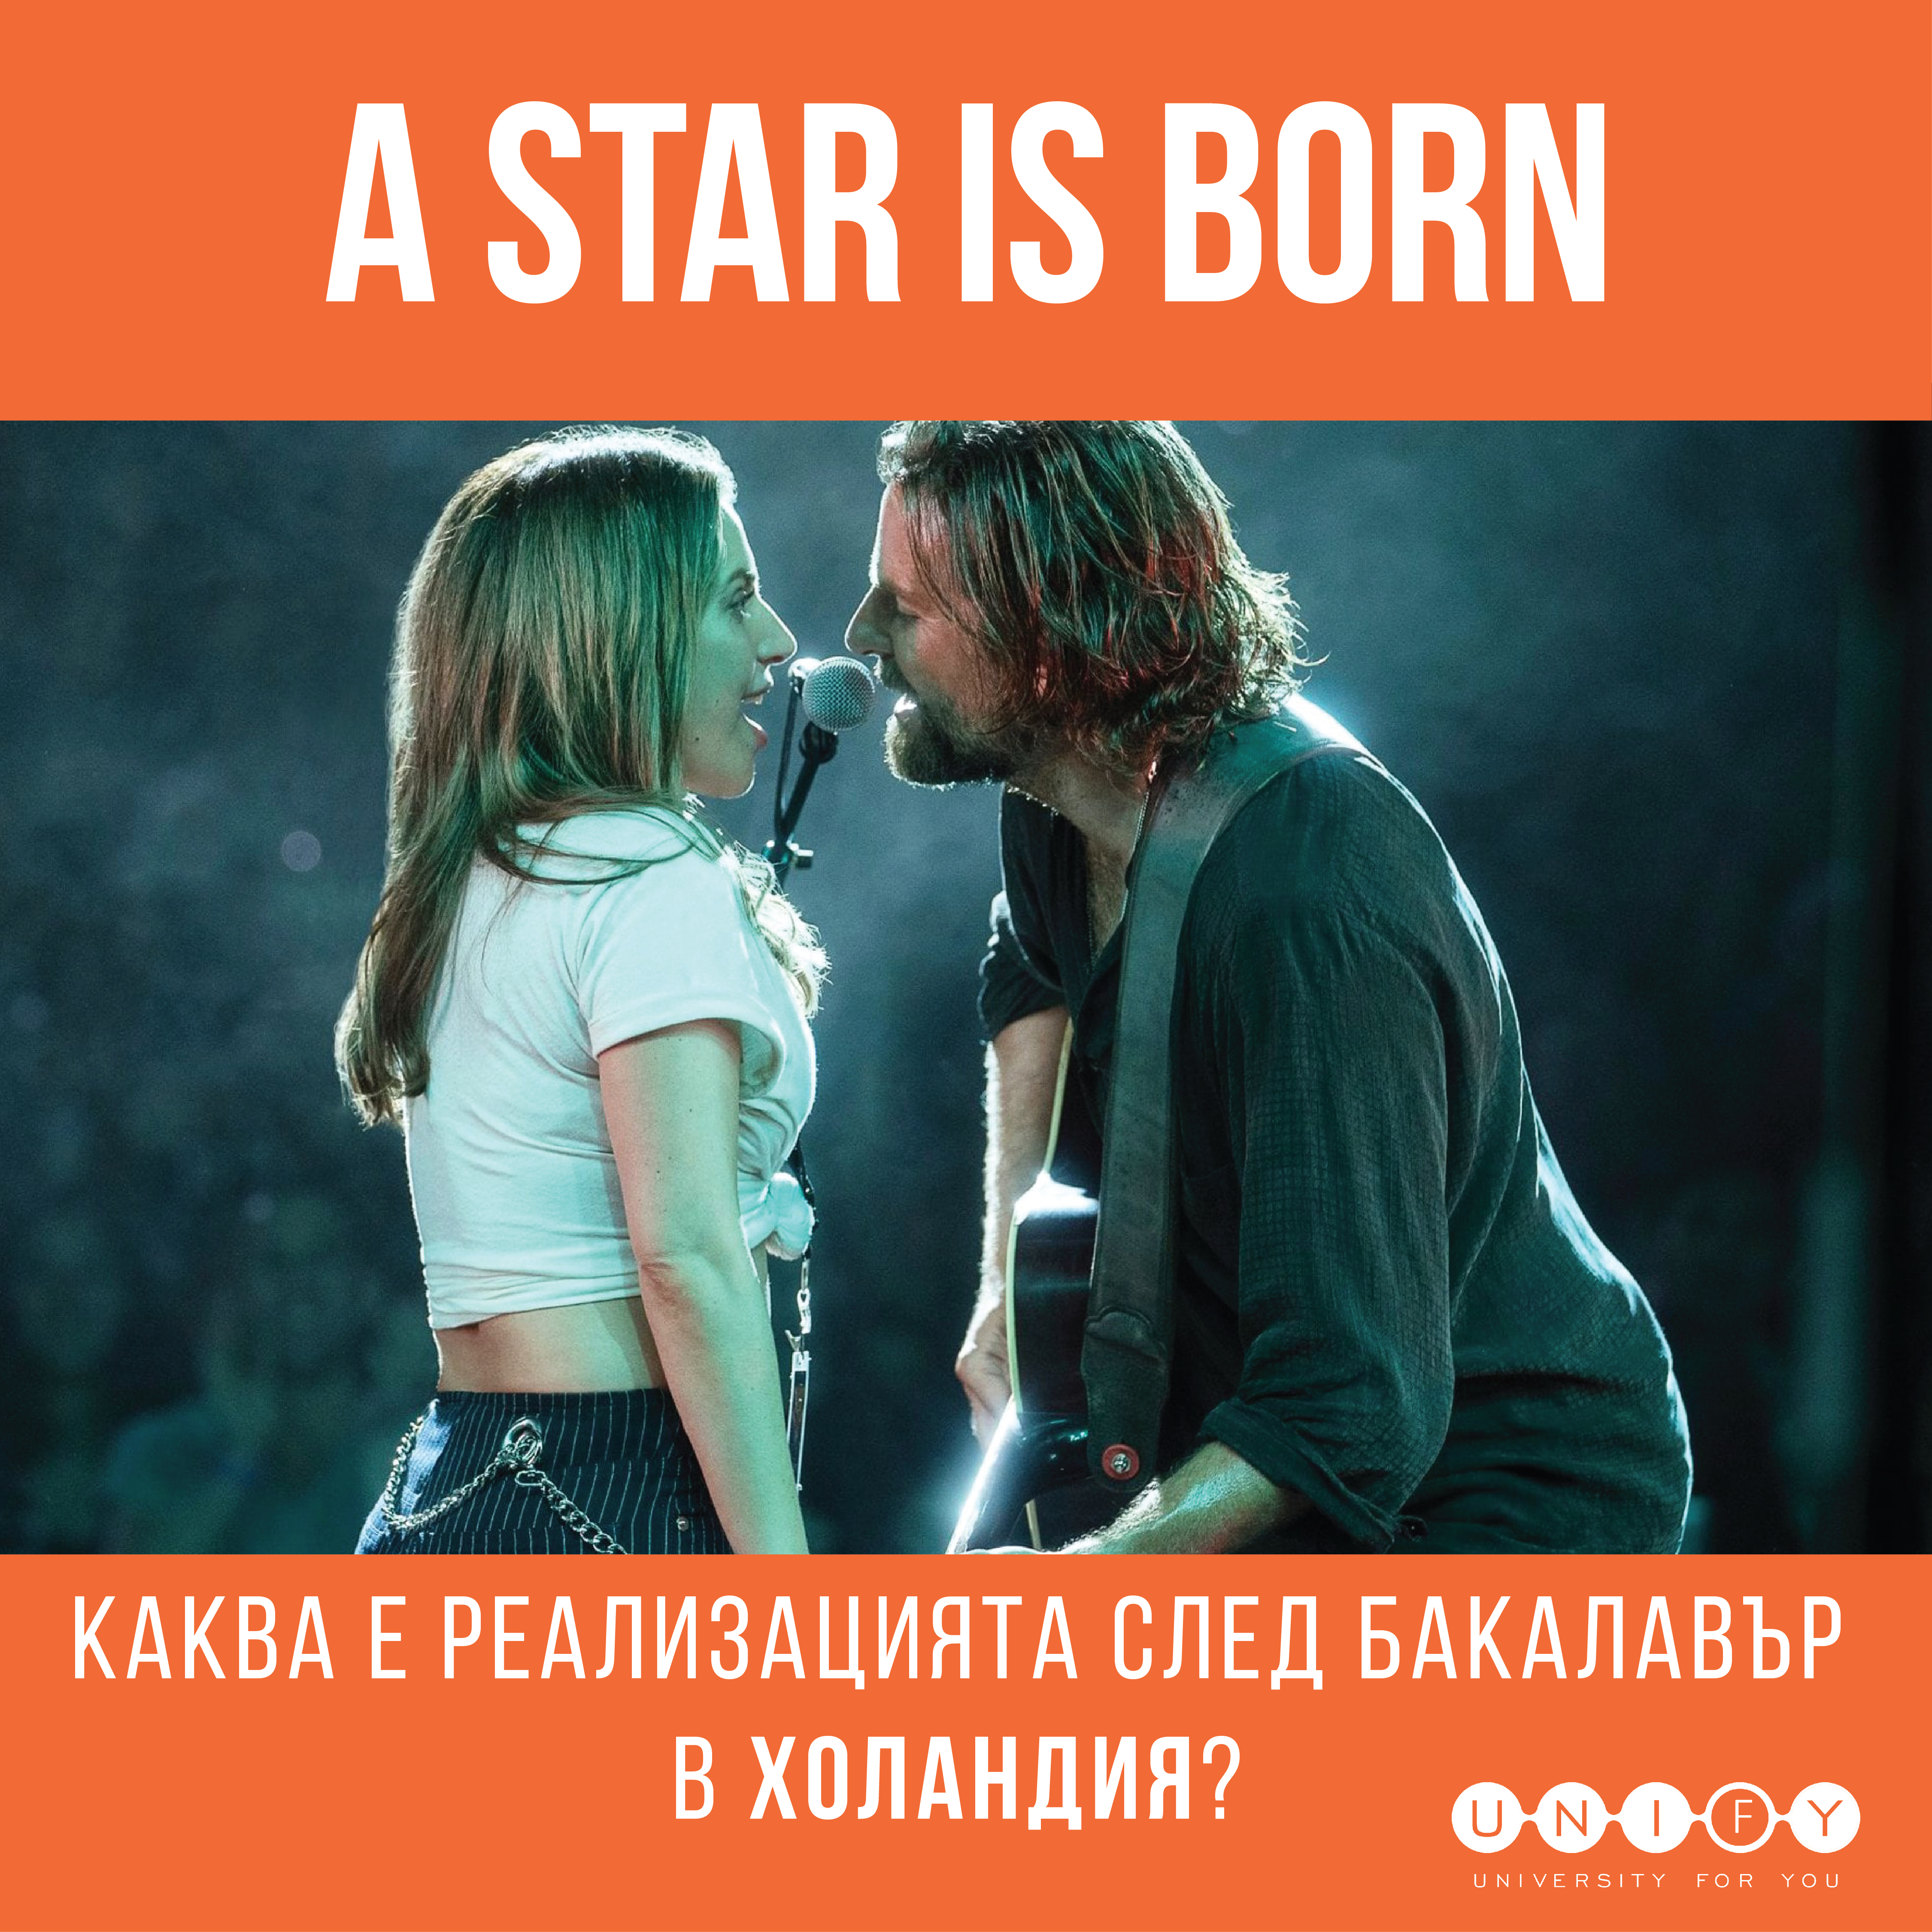 "A Star is born" или каква е реализацията след бакалавър в Холандия?